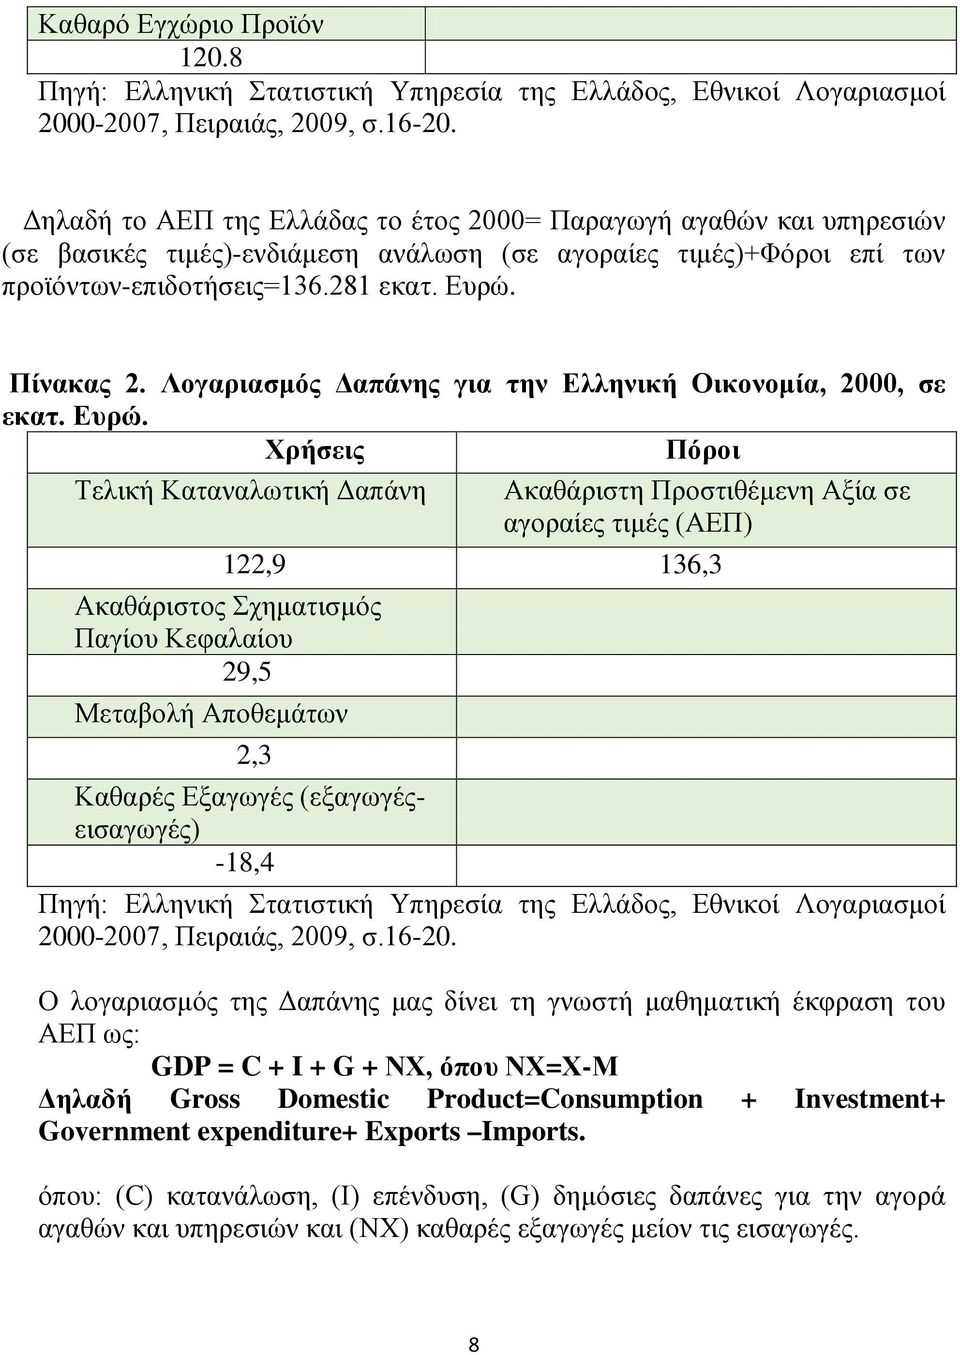 Λογαριασμός Δαπάνης για την Ελληνική Οικονομία, 2000, σε εκατ. Ευρώ.